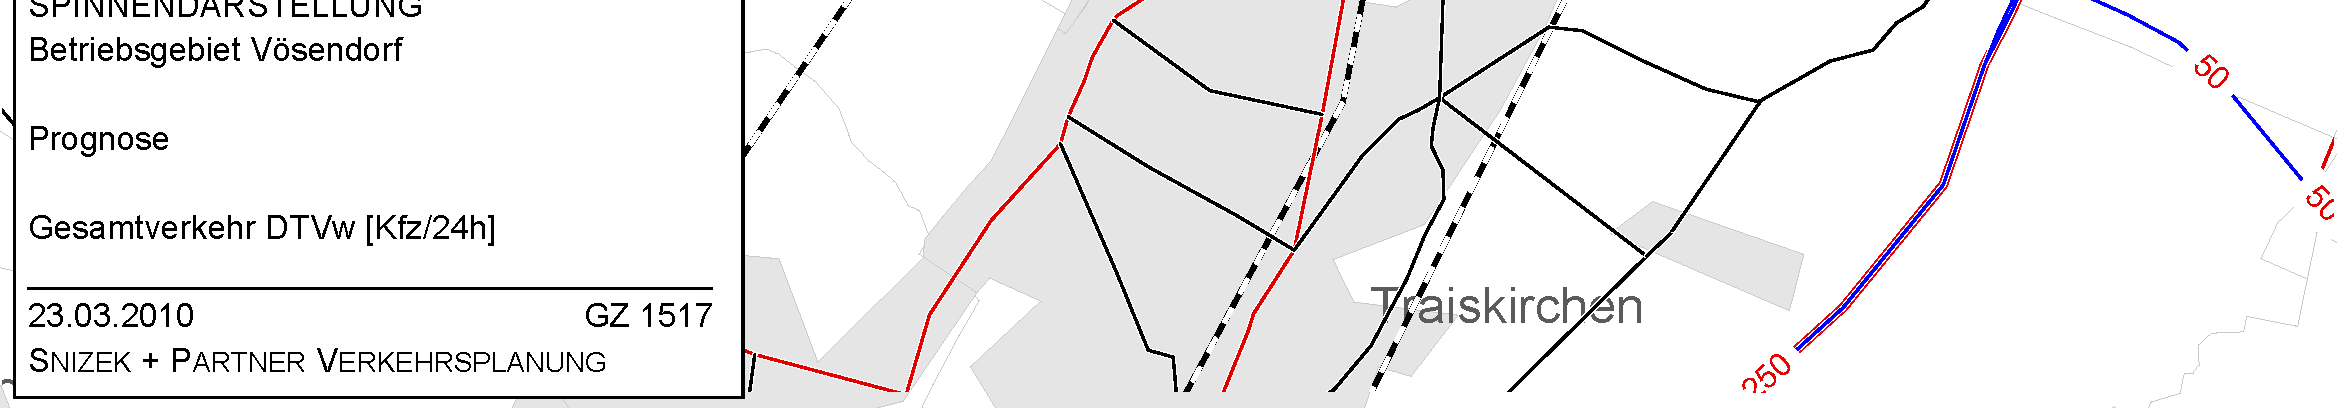 Mehrbelastungen im Straßennetz durch Nutzung der Widmung 14 Vösendorf